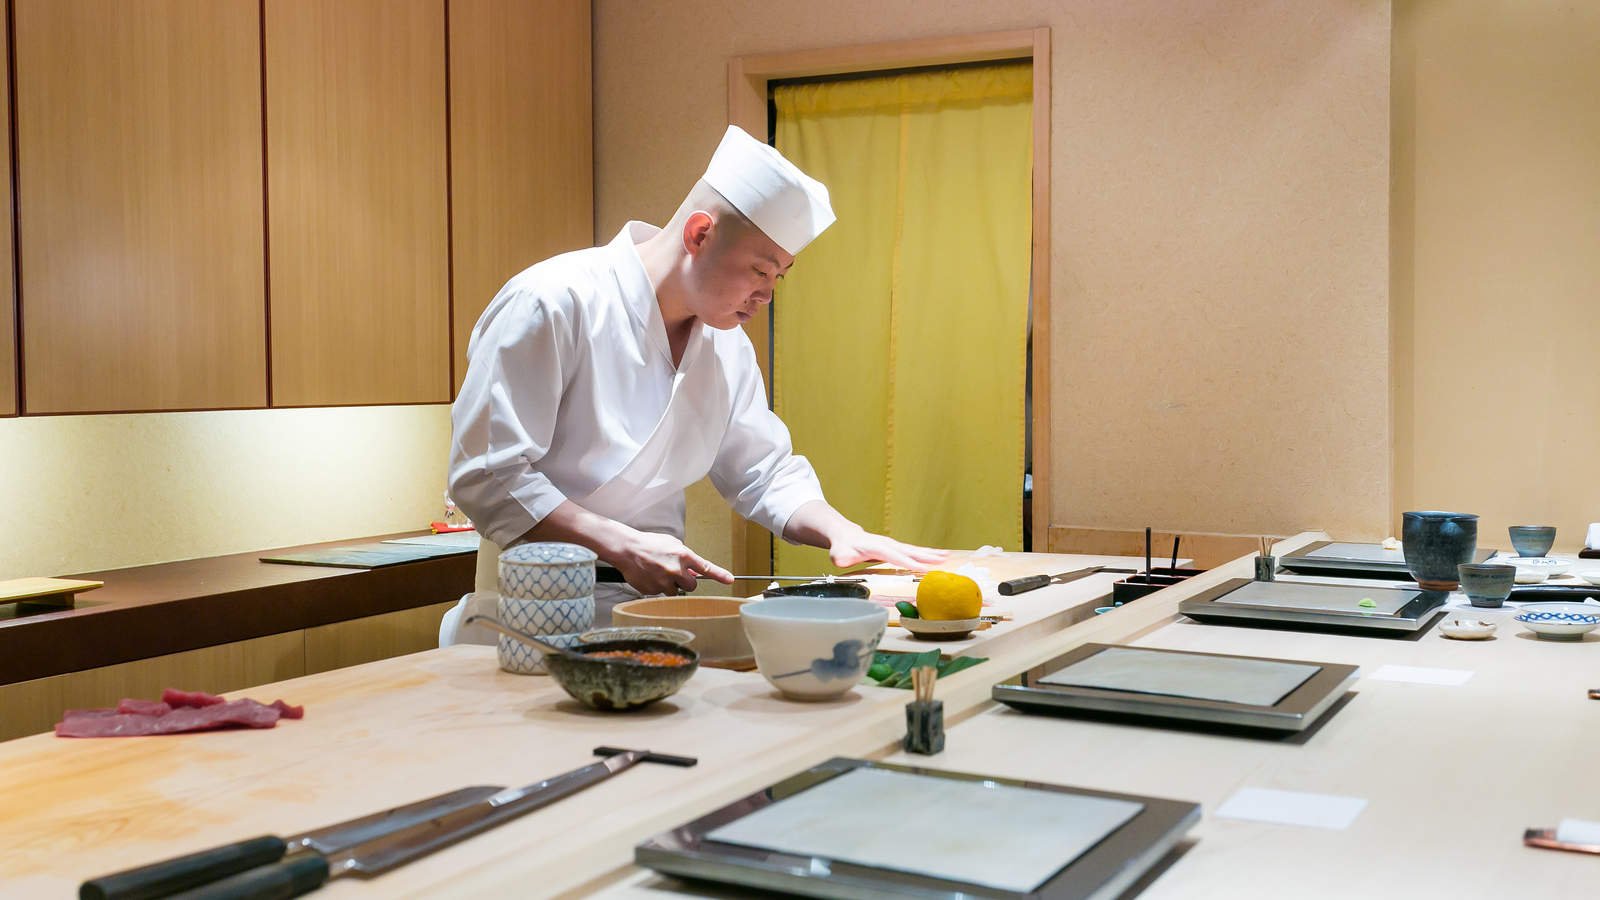 Hộp cơm omakase giá gần 2 triệu được ship tận nhà khiến dân mạng 